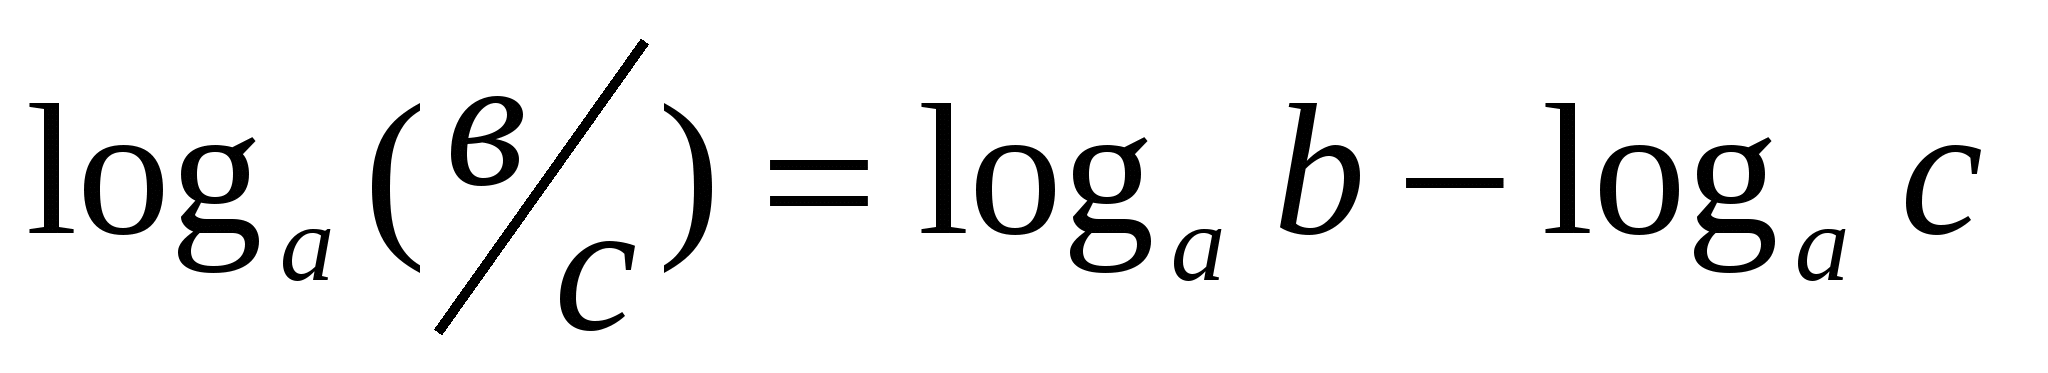 Конспект урока 11 класс на тему Понятие логарифма. Основное логарифмическое тождество